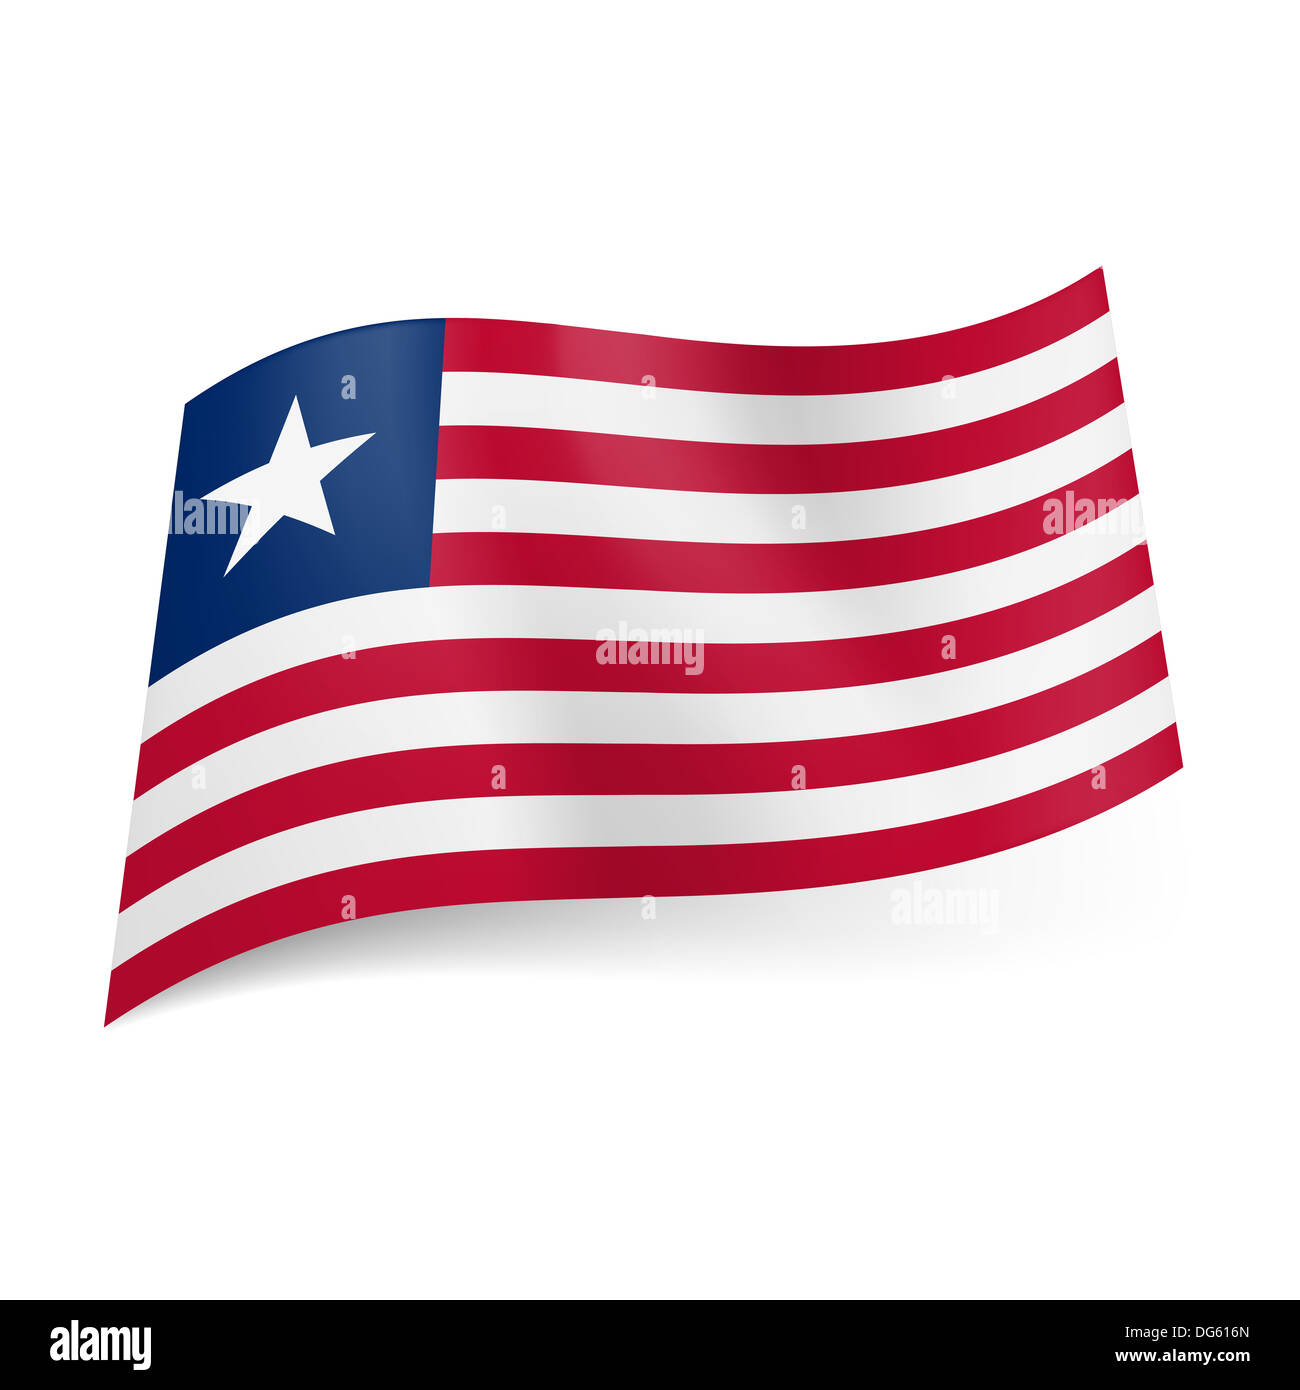 La bandera nacional de Liberia: rojo y blanco de rayas horizontales,  cuadrado azul con la estrella blanca en la esquina superior izquierda  Fotografía de stock - Alamy